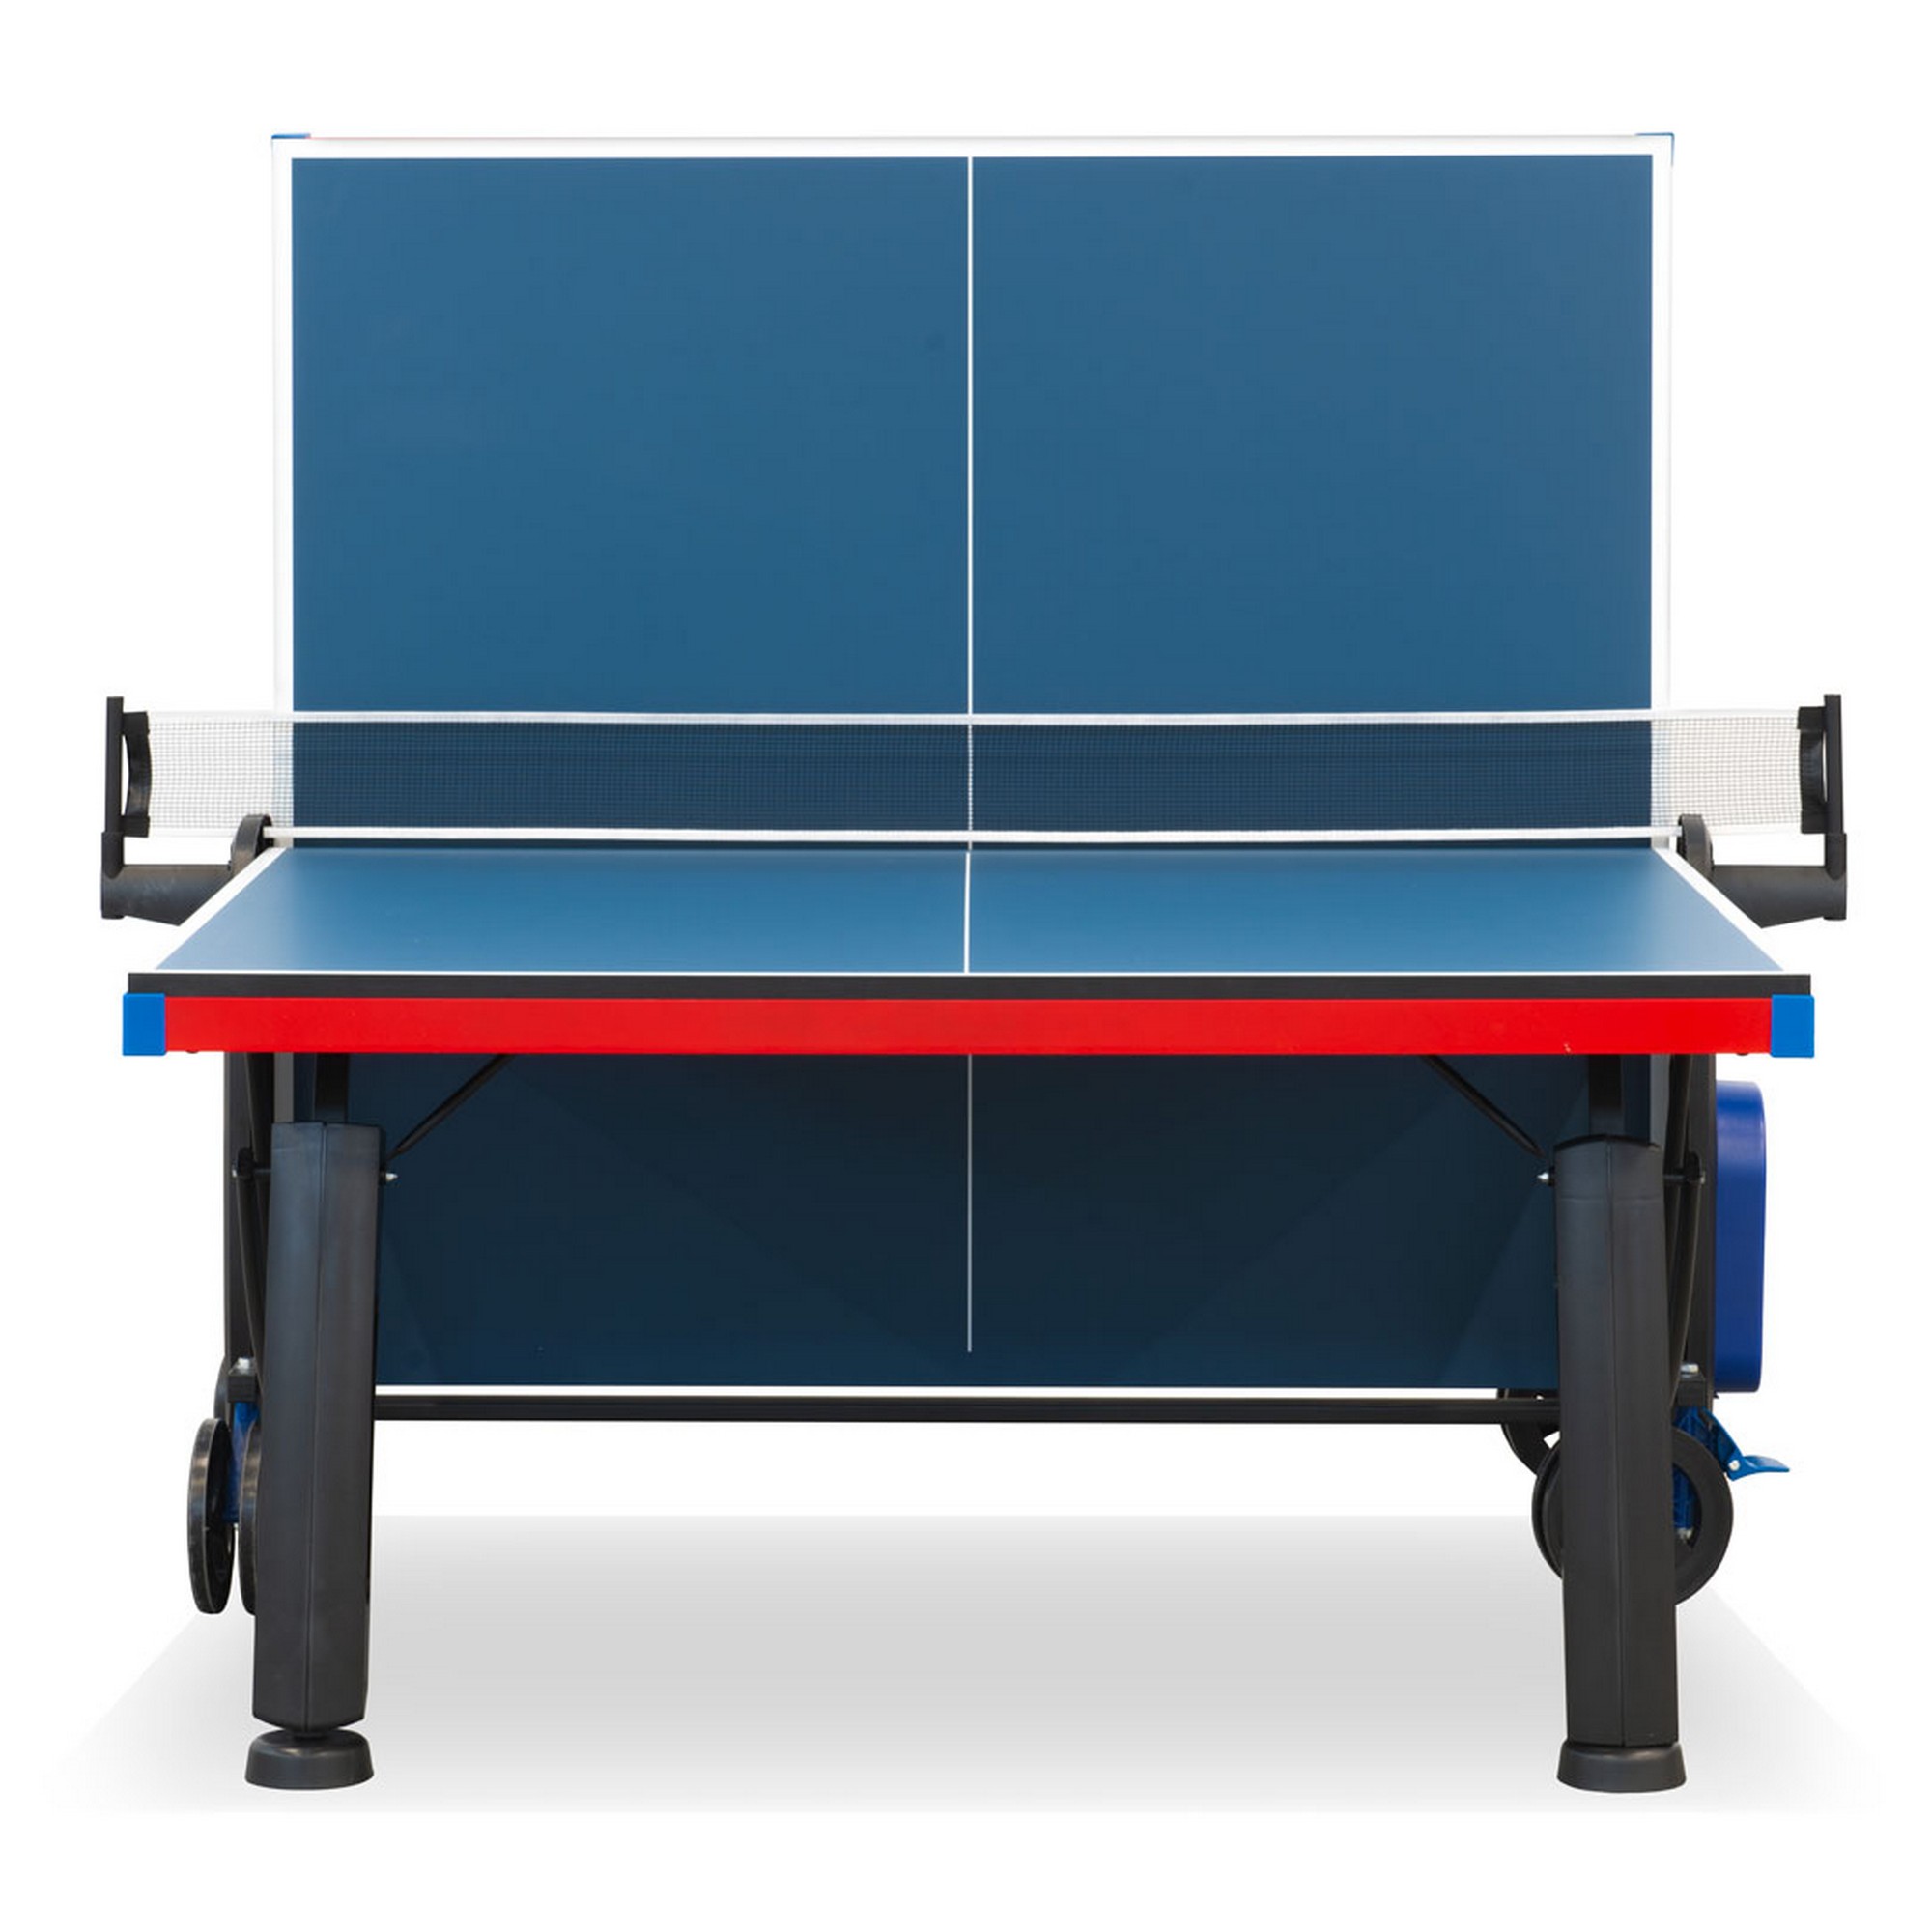 Теннисный стол складной для помещений S-300 New Winner 51.300.01.0 2000_2000